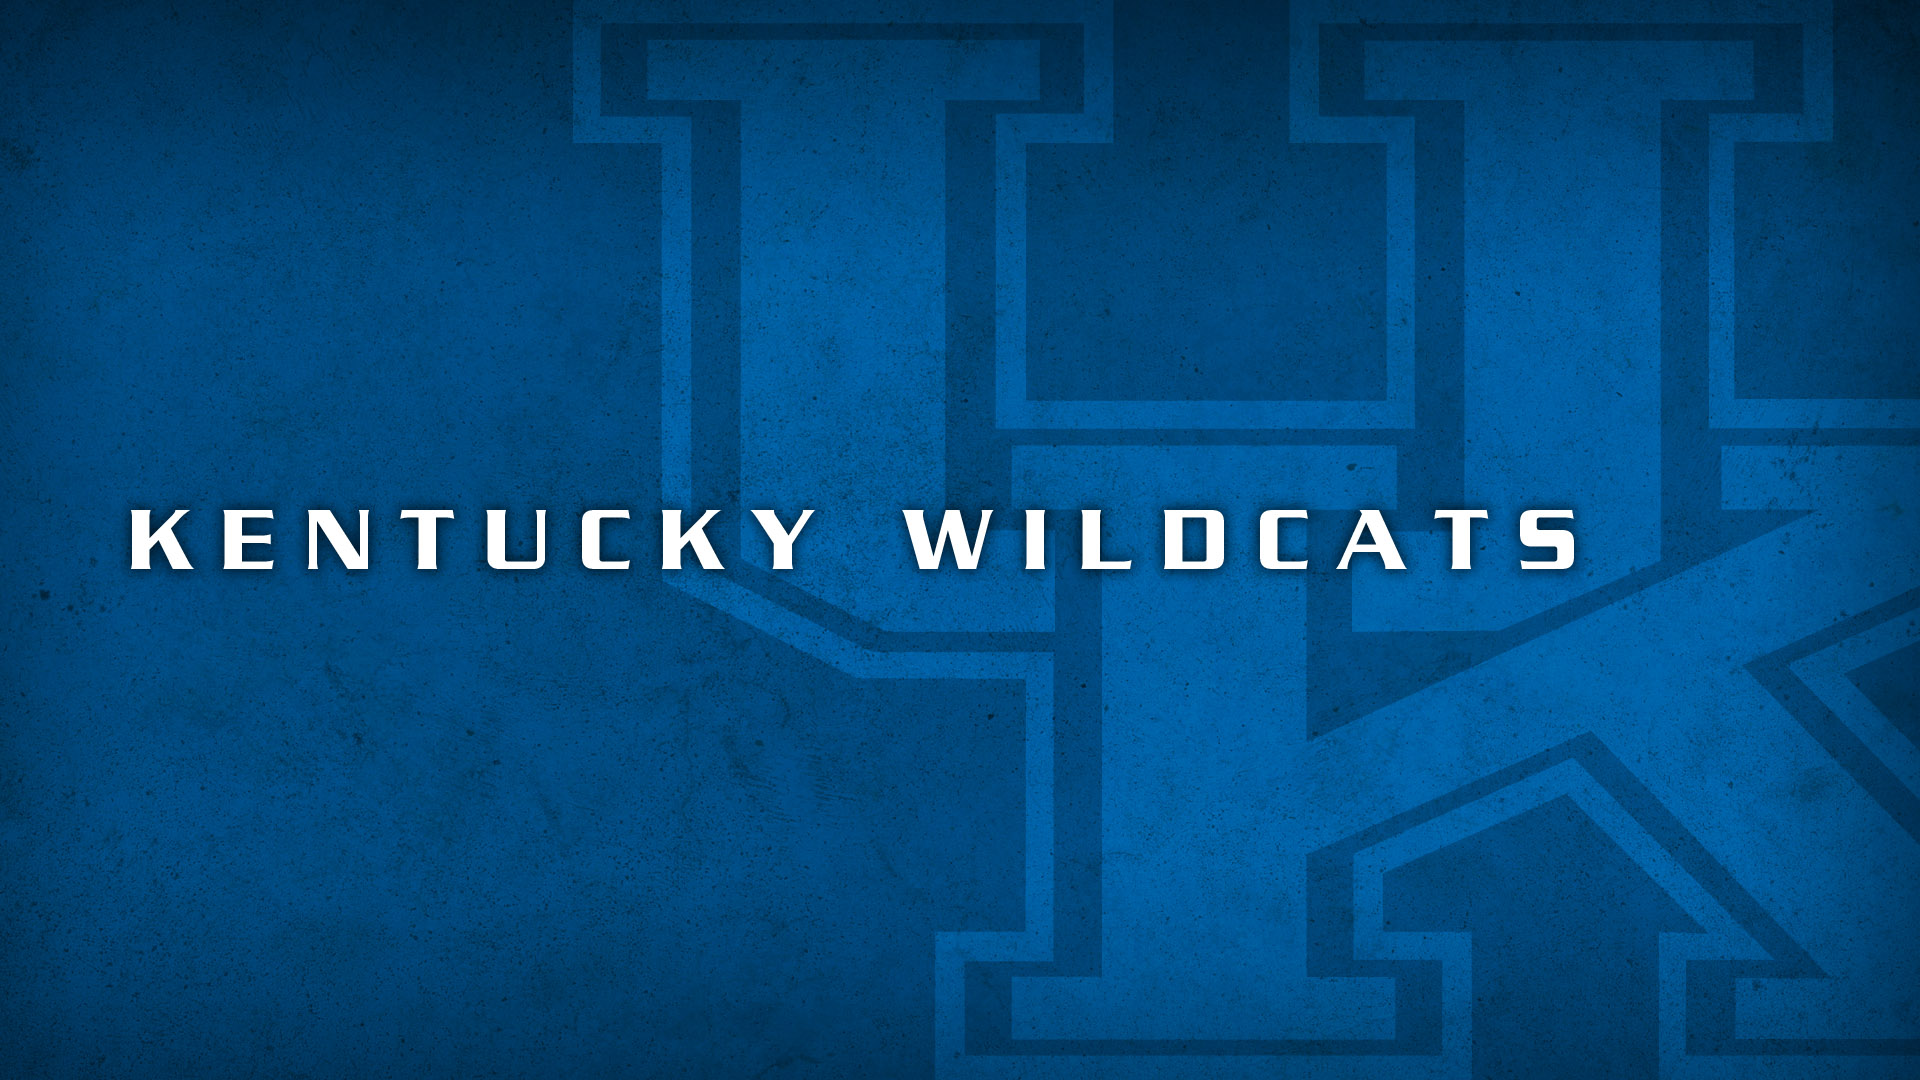 Kentucky Wildcats Logo 1920 x 1080 1600 x 1200